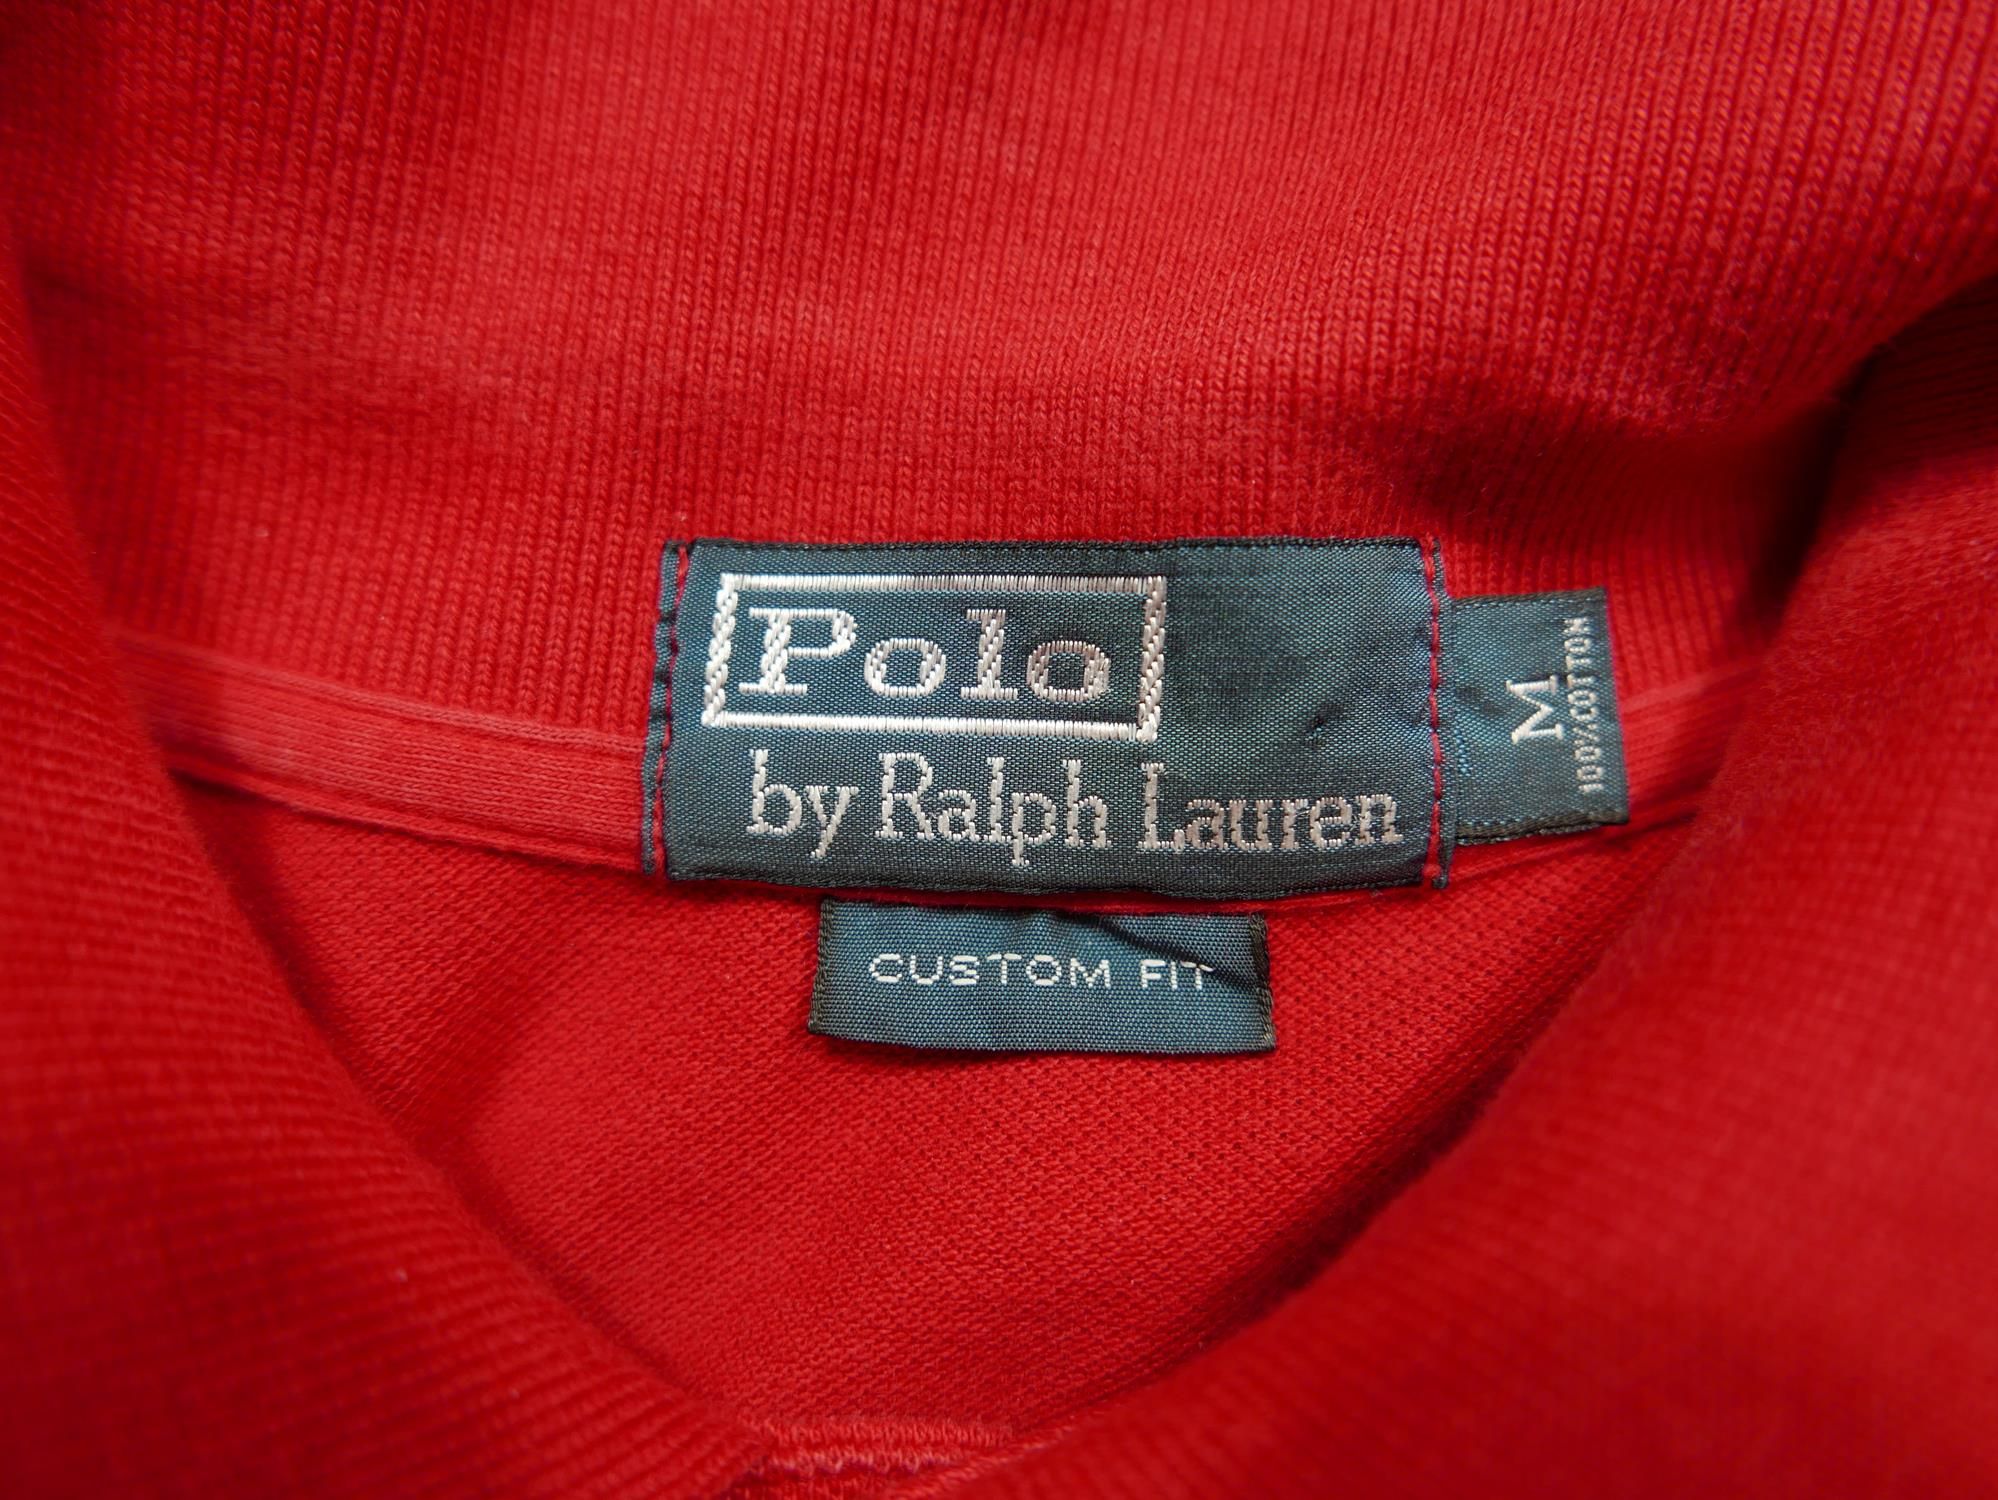 Polo Ralph Lauren Polo Ralph Lauren Shirt Red Military Graphic Naval Air M Size US M / EU 48-50 / 2 - 3 Thumbnail